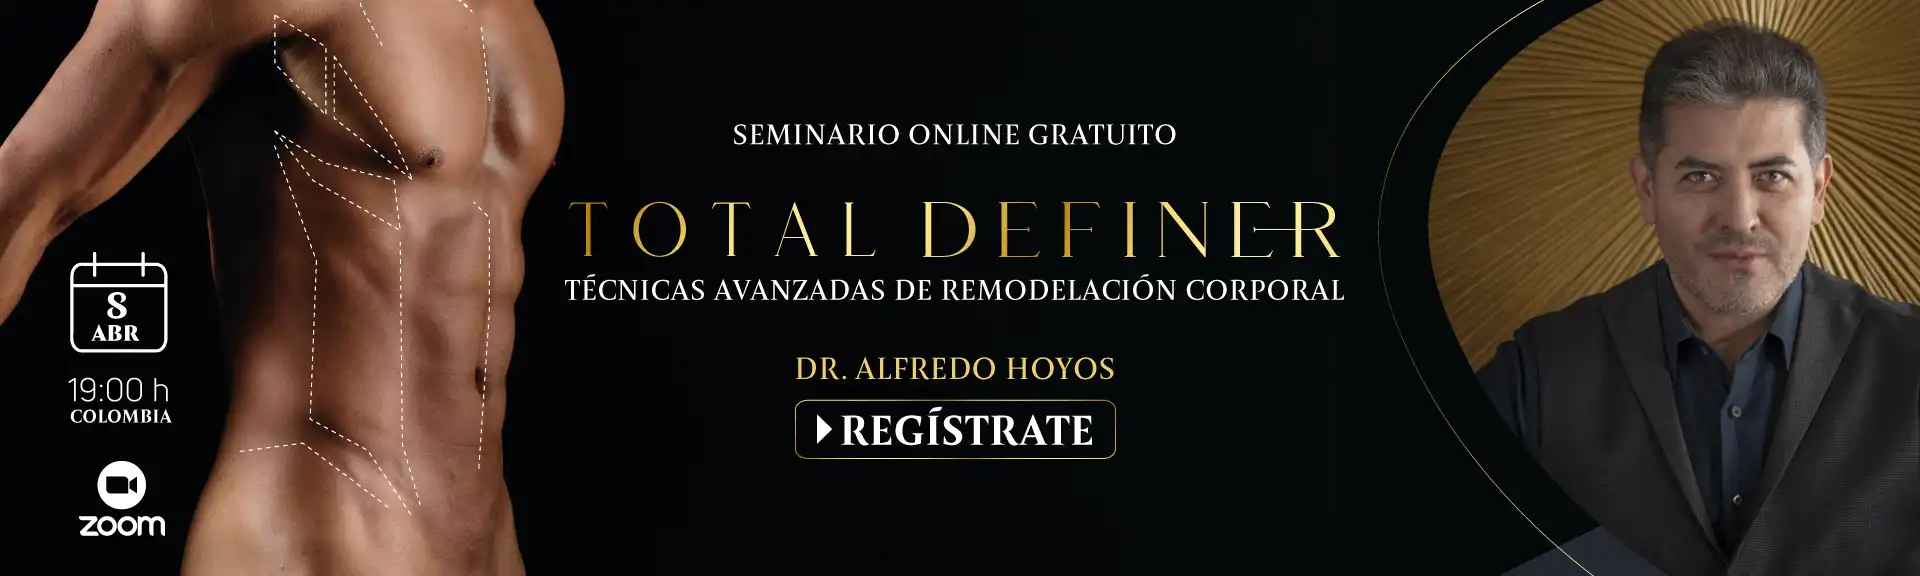 Seminario Online: "Total Definer: técnicas avanzadas de remodelación corporal"